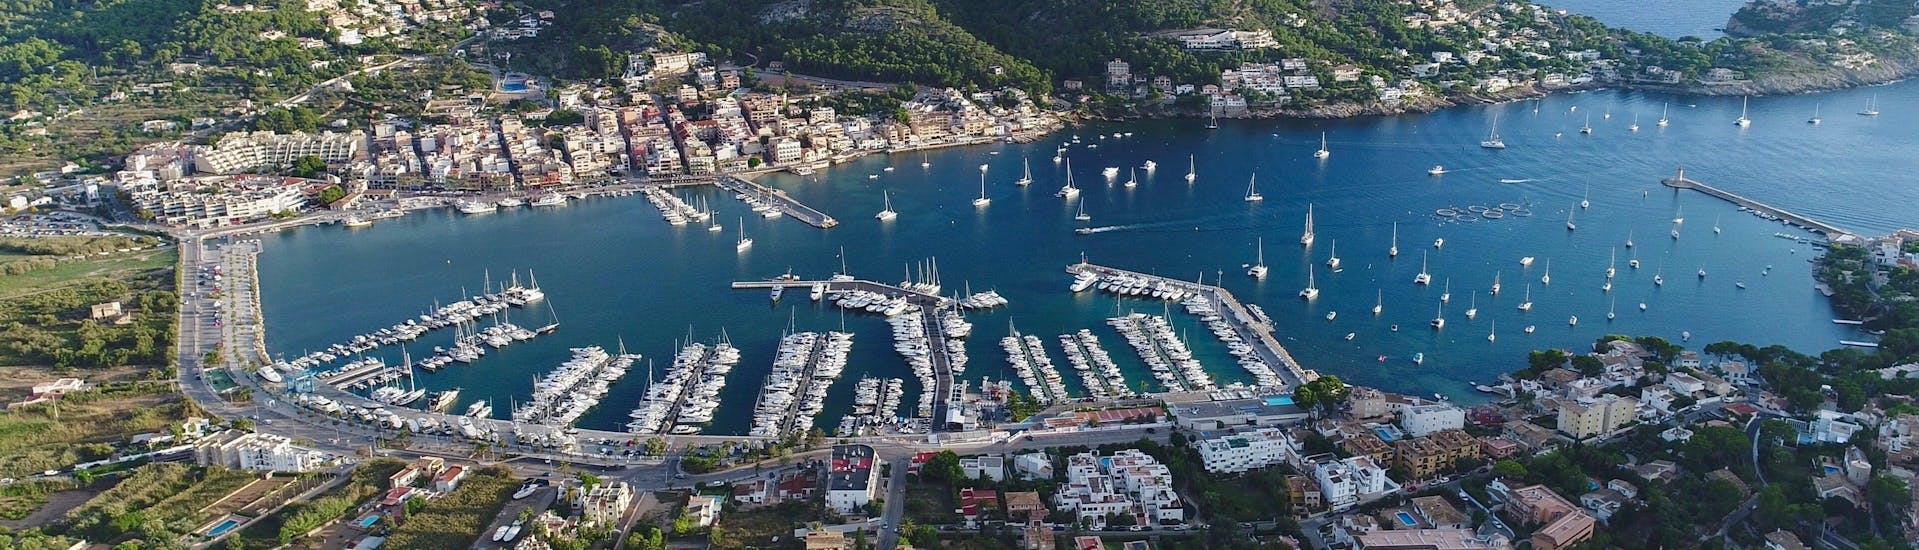 Blick auf Port d'Andratx, Mallorca, ein schönes Urlaubsziel. 